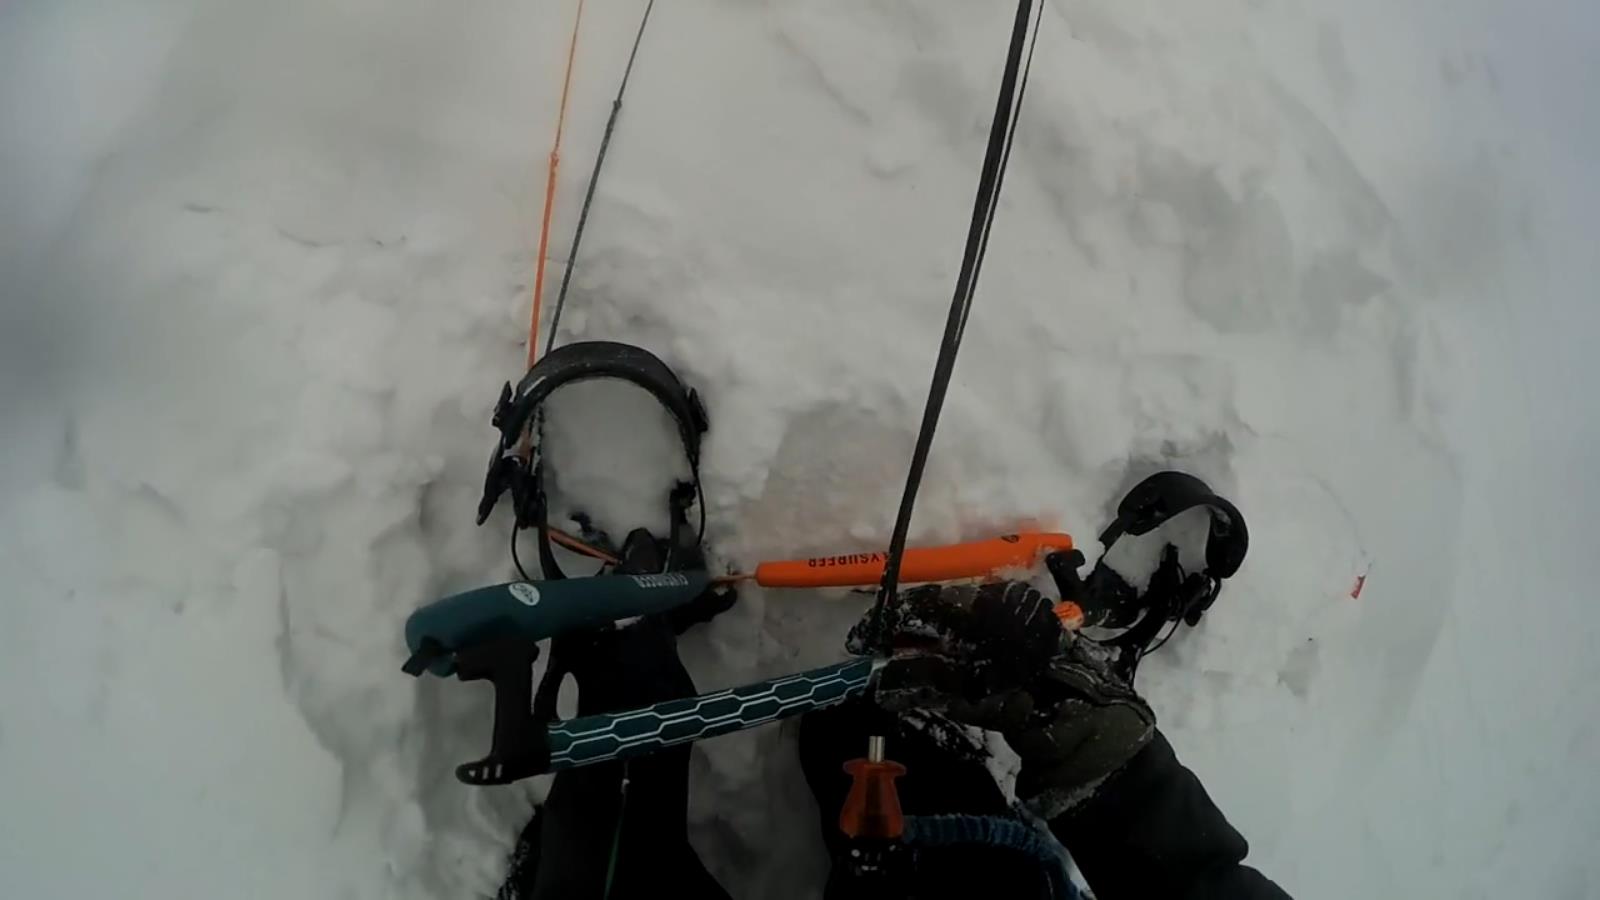 PDK - přistání komorového draka na sněhu - snowboard pevný bod